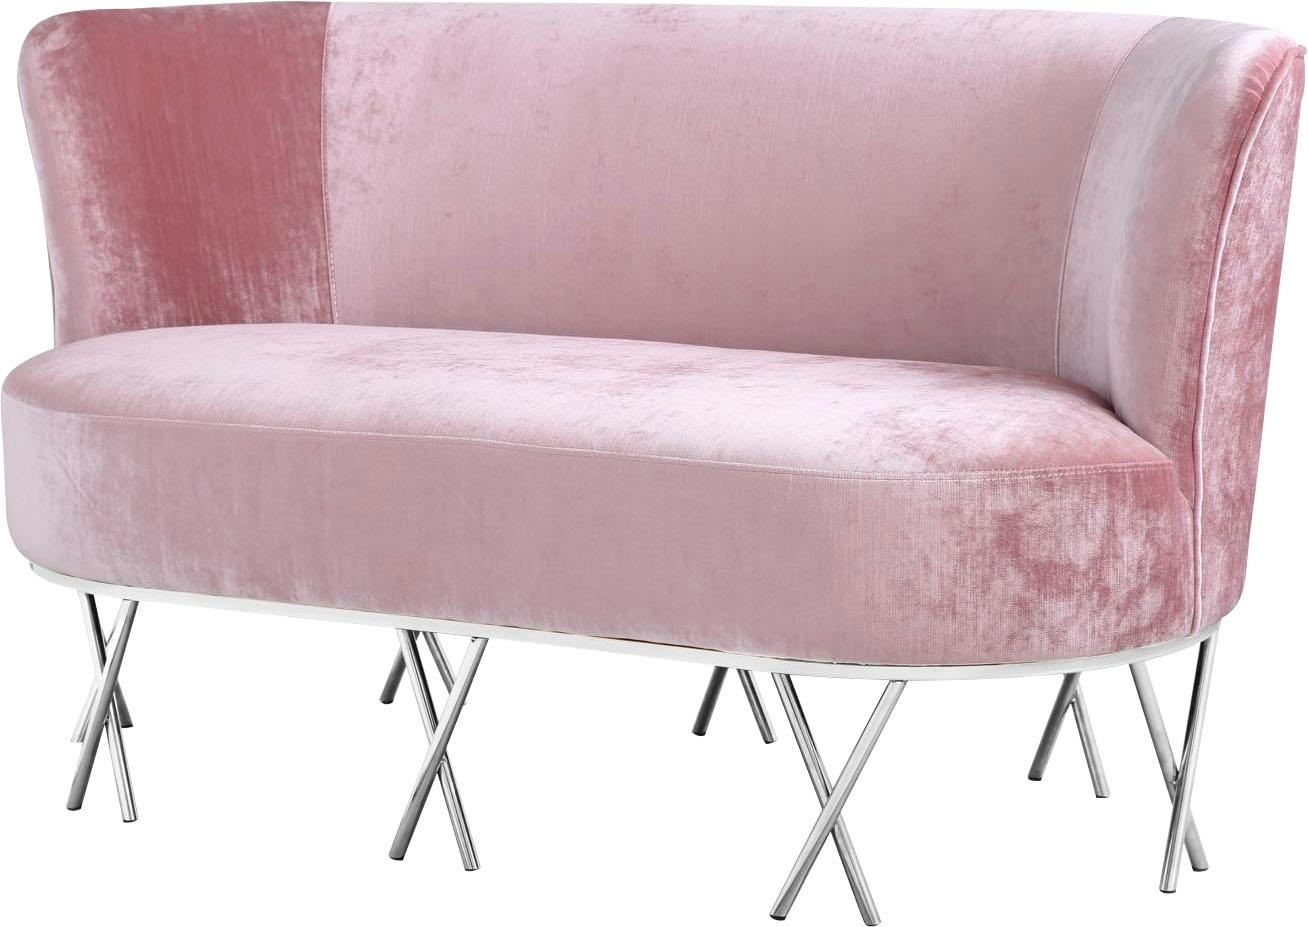 Sofa »Scarlett«, mit chromfarbenen Metallfüßen, extravagantes Design